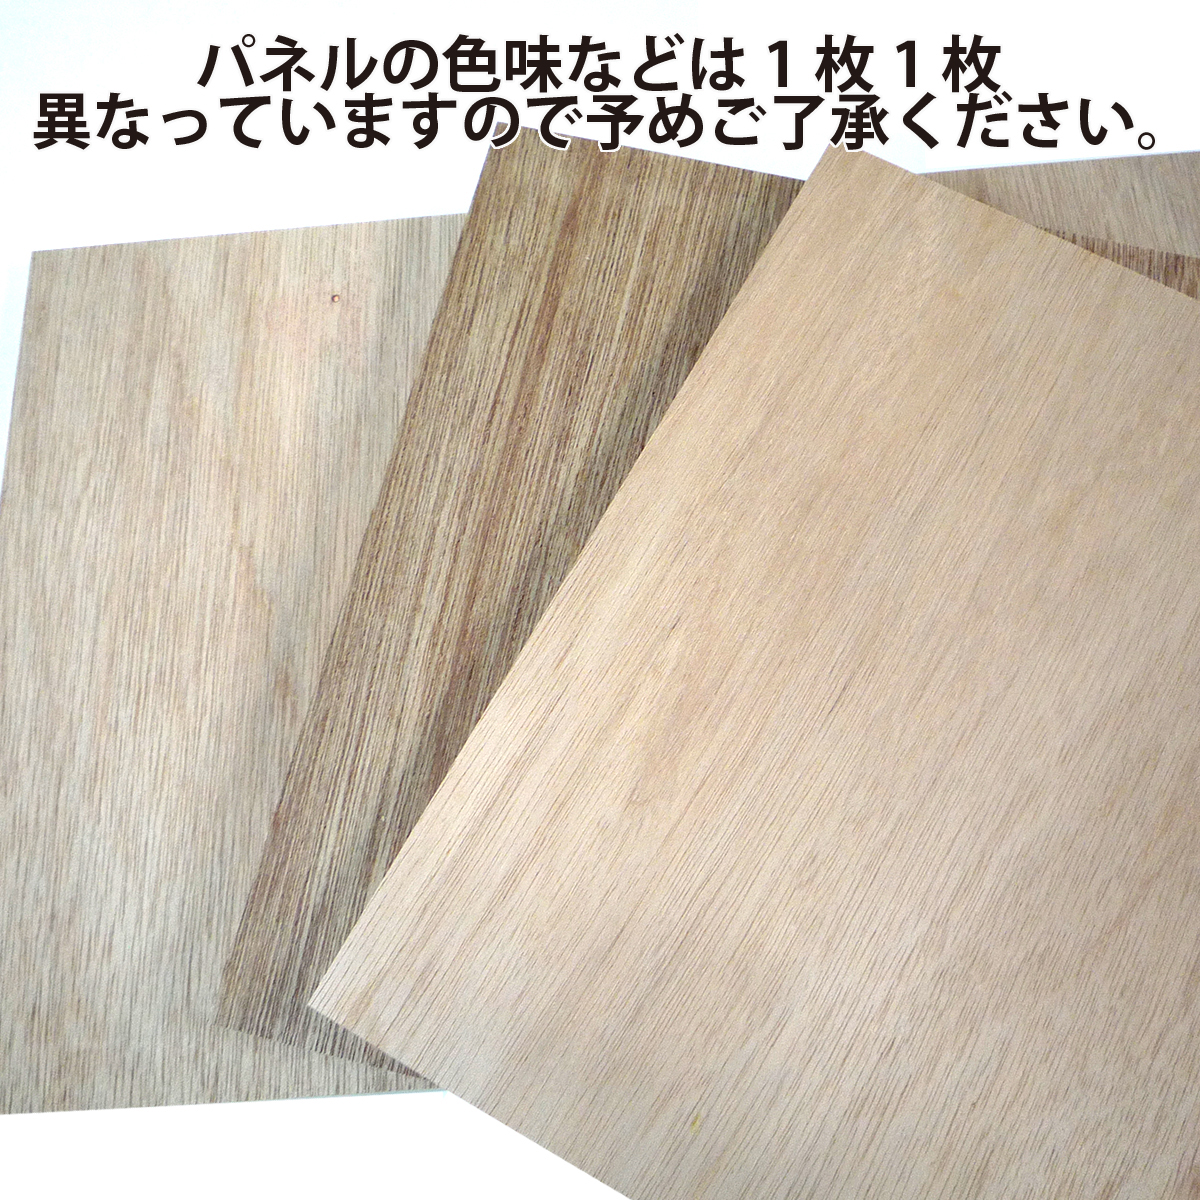 適当な価格ゆめ画材 木製 ラワンベニヤパネル S10 (530×530mm)10枚パック 画材